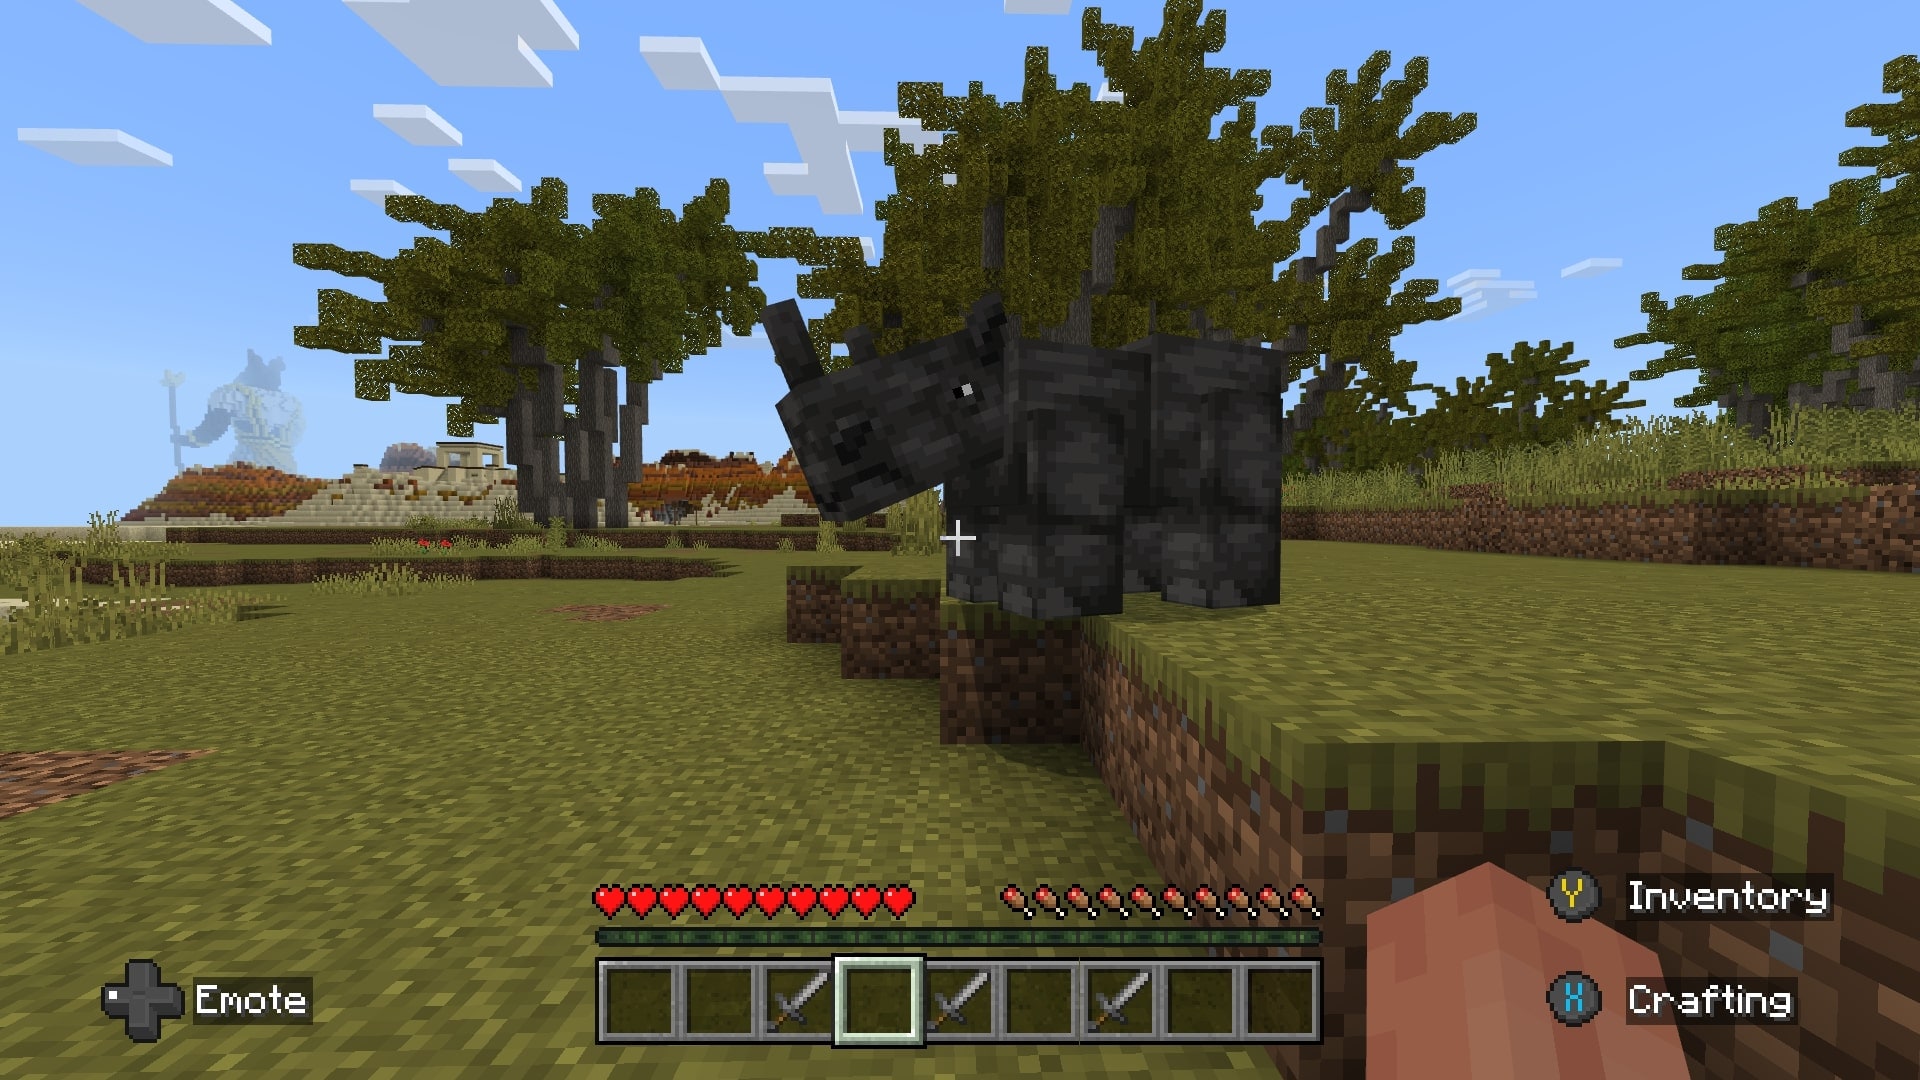 A screenshot of a rhino in Minecraft.